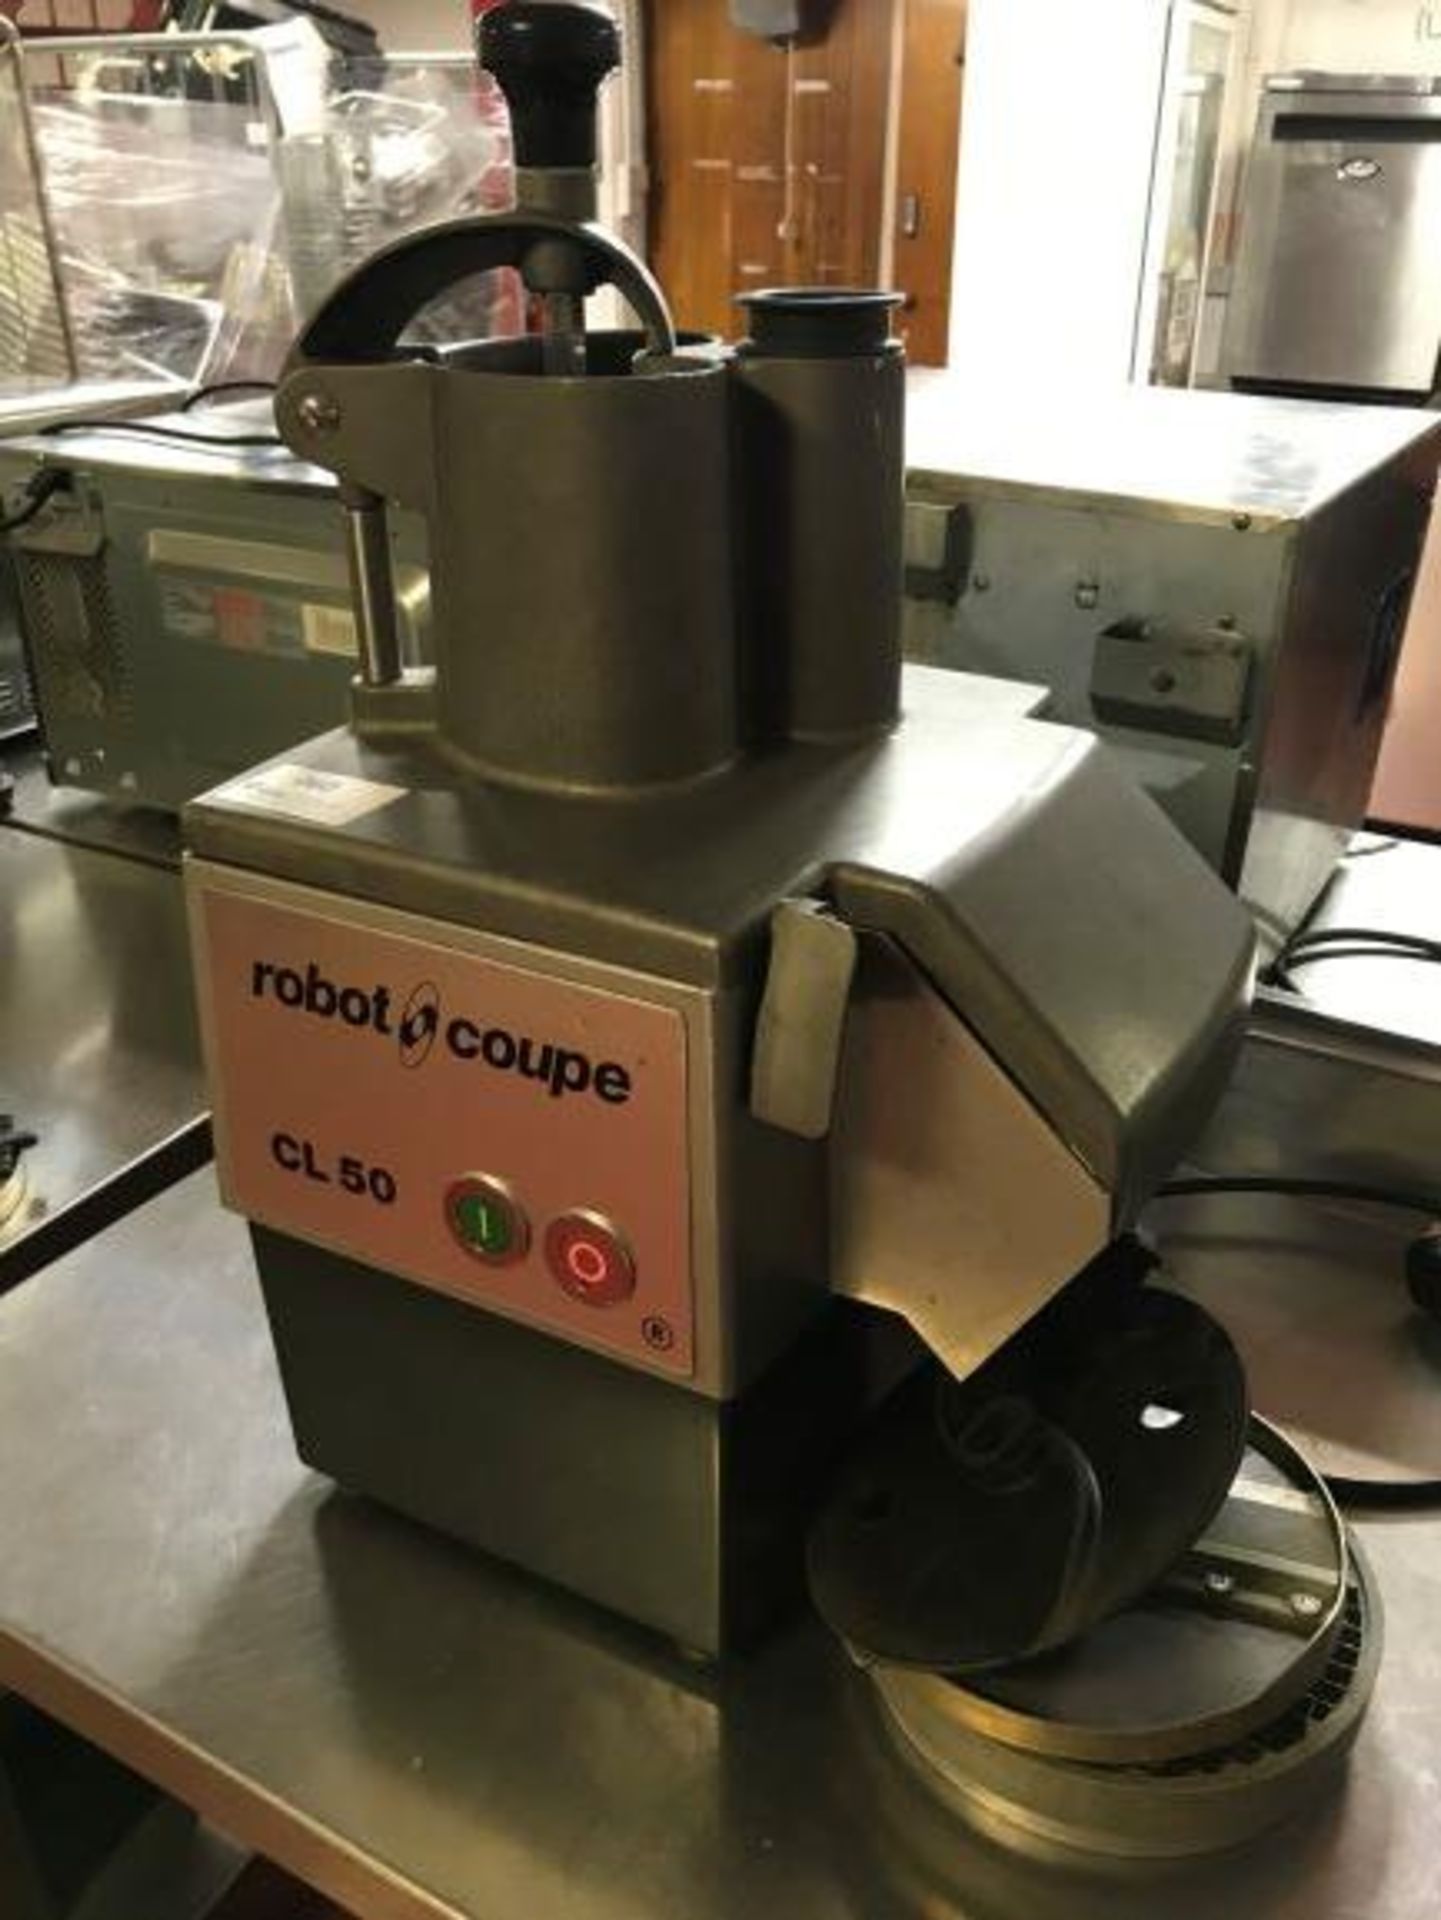 Robot Coupe CL50 commercial vegtable preparation machine